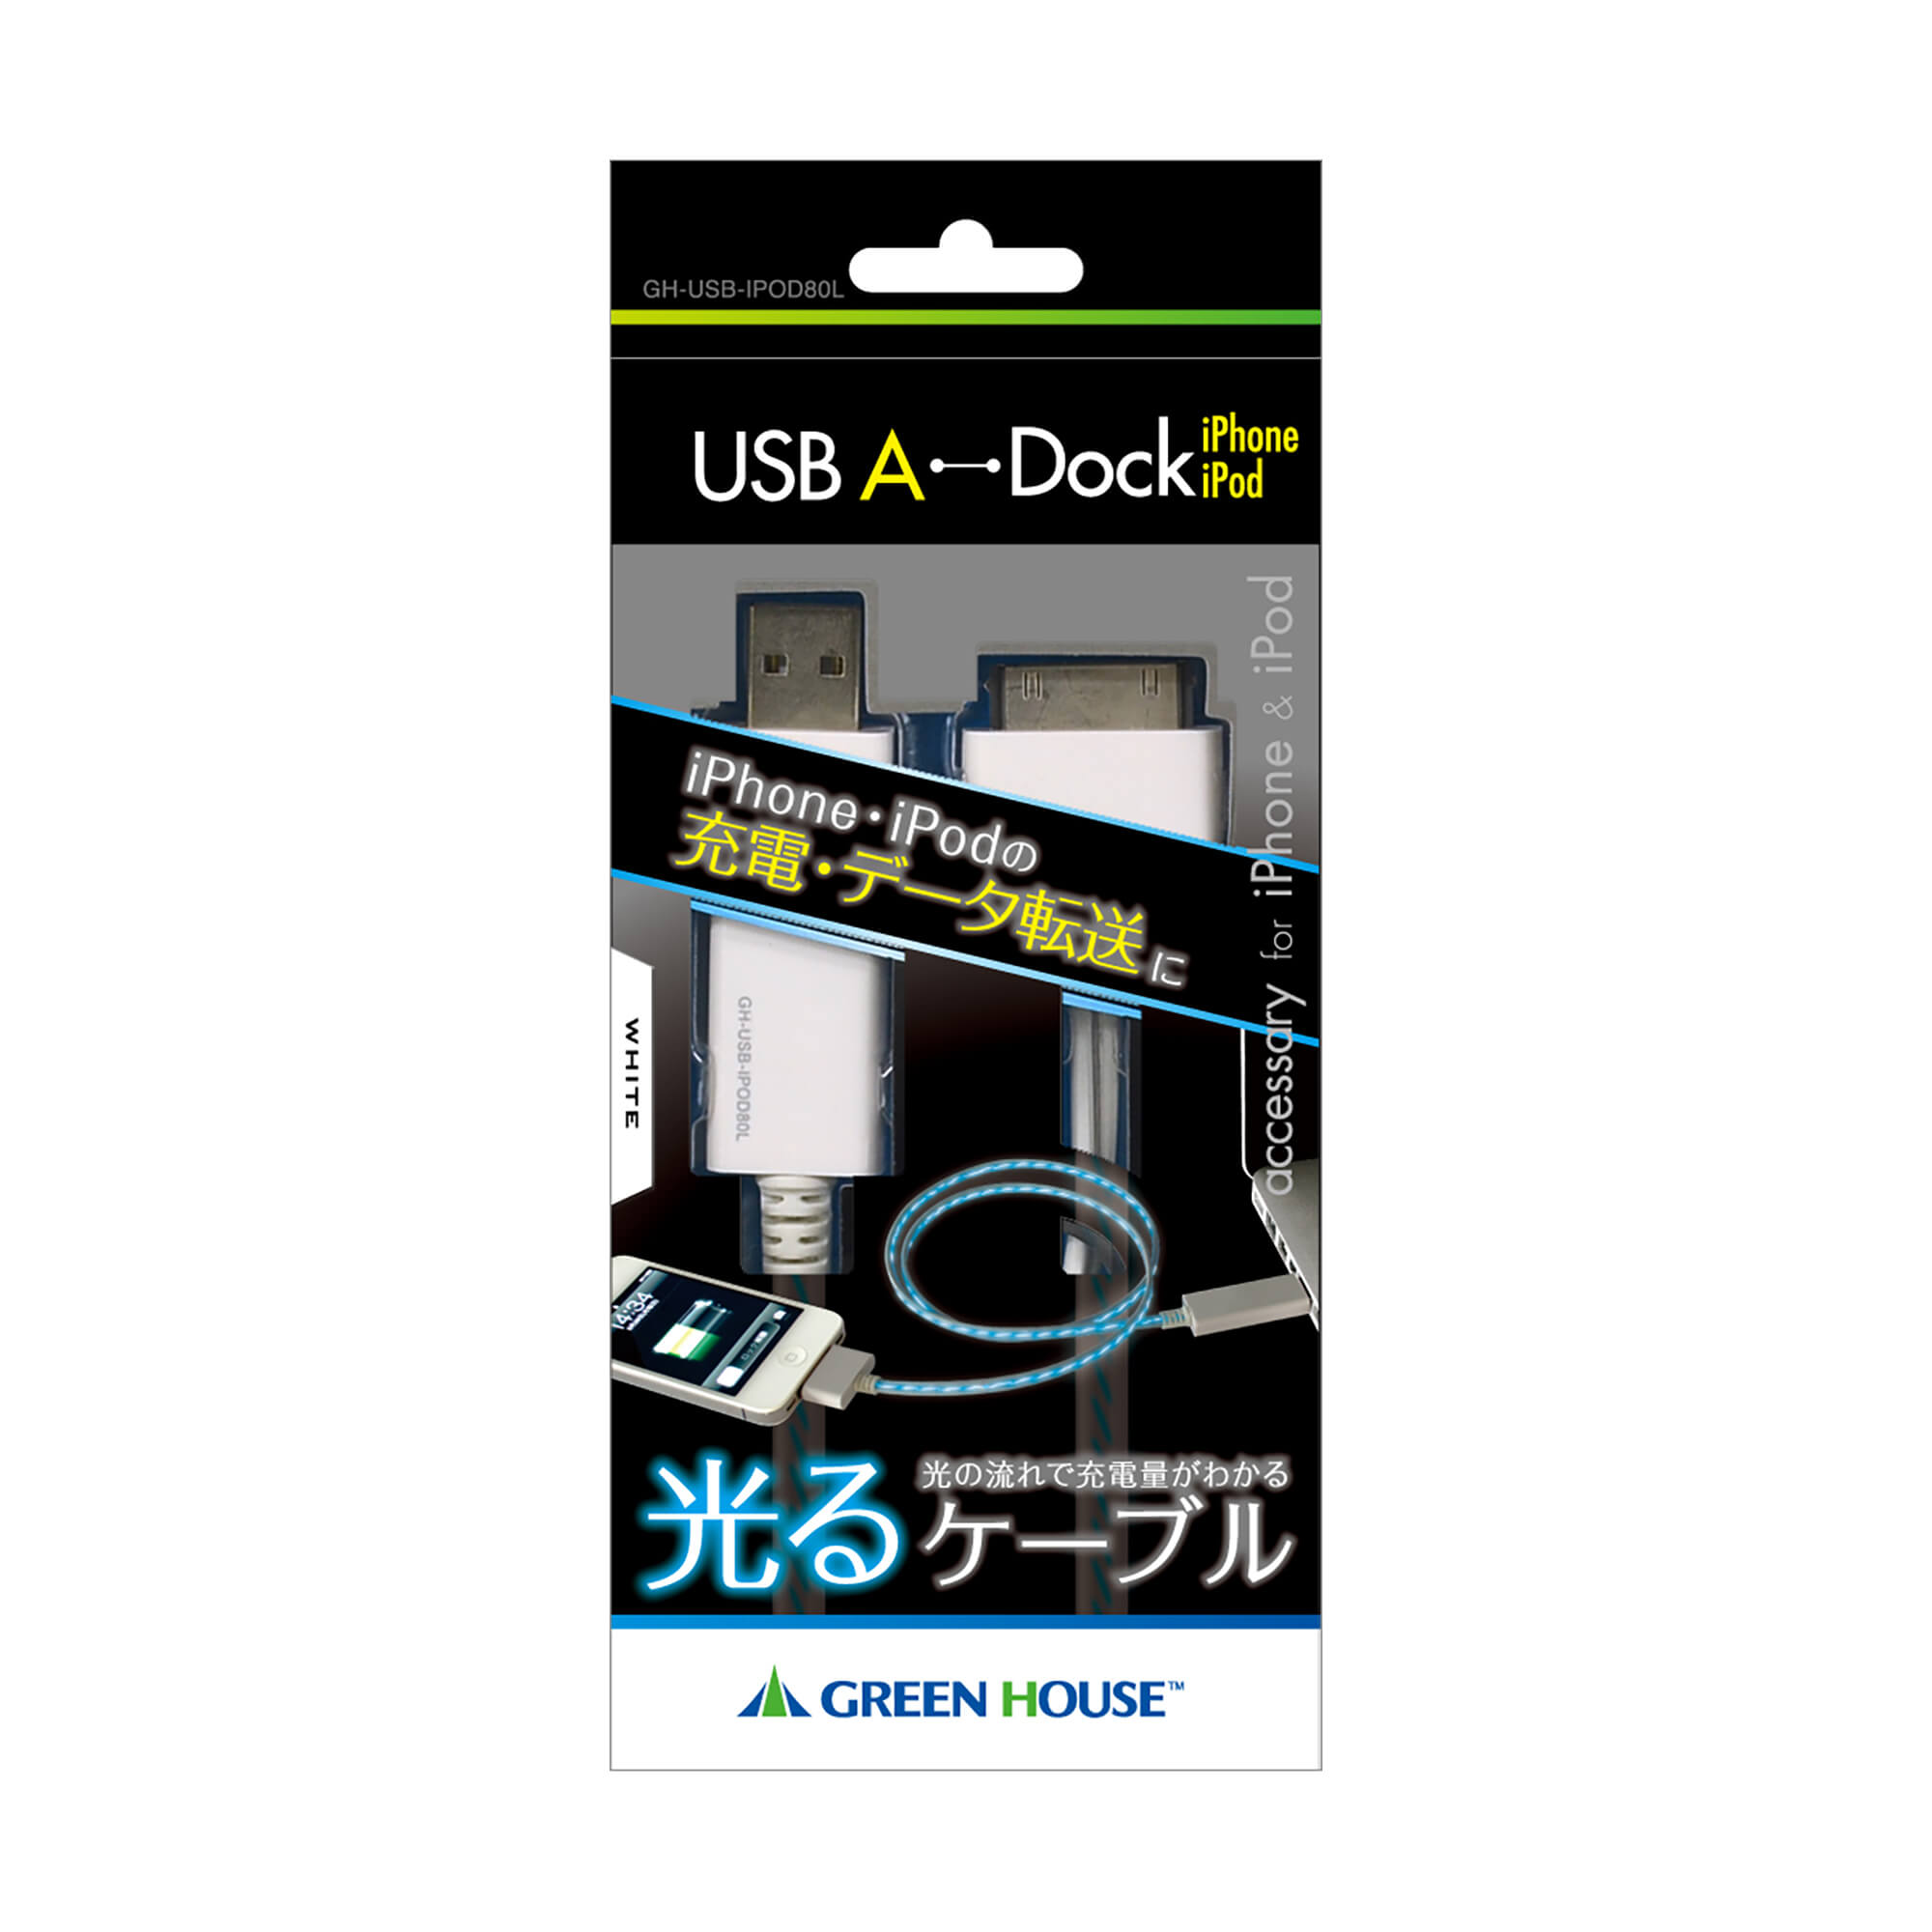 GH-USB-IPOD80L